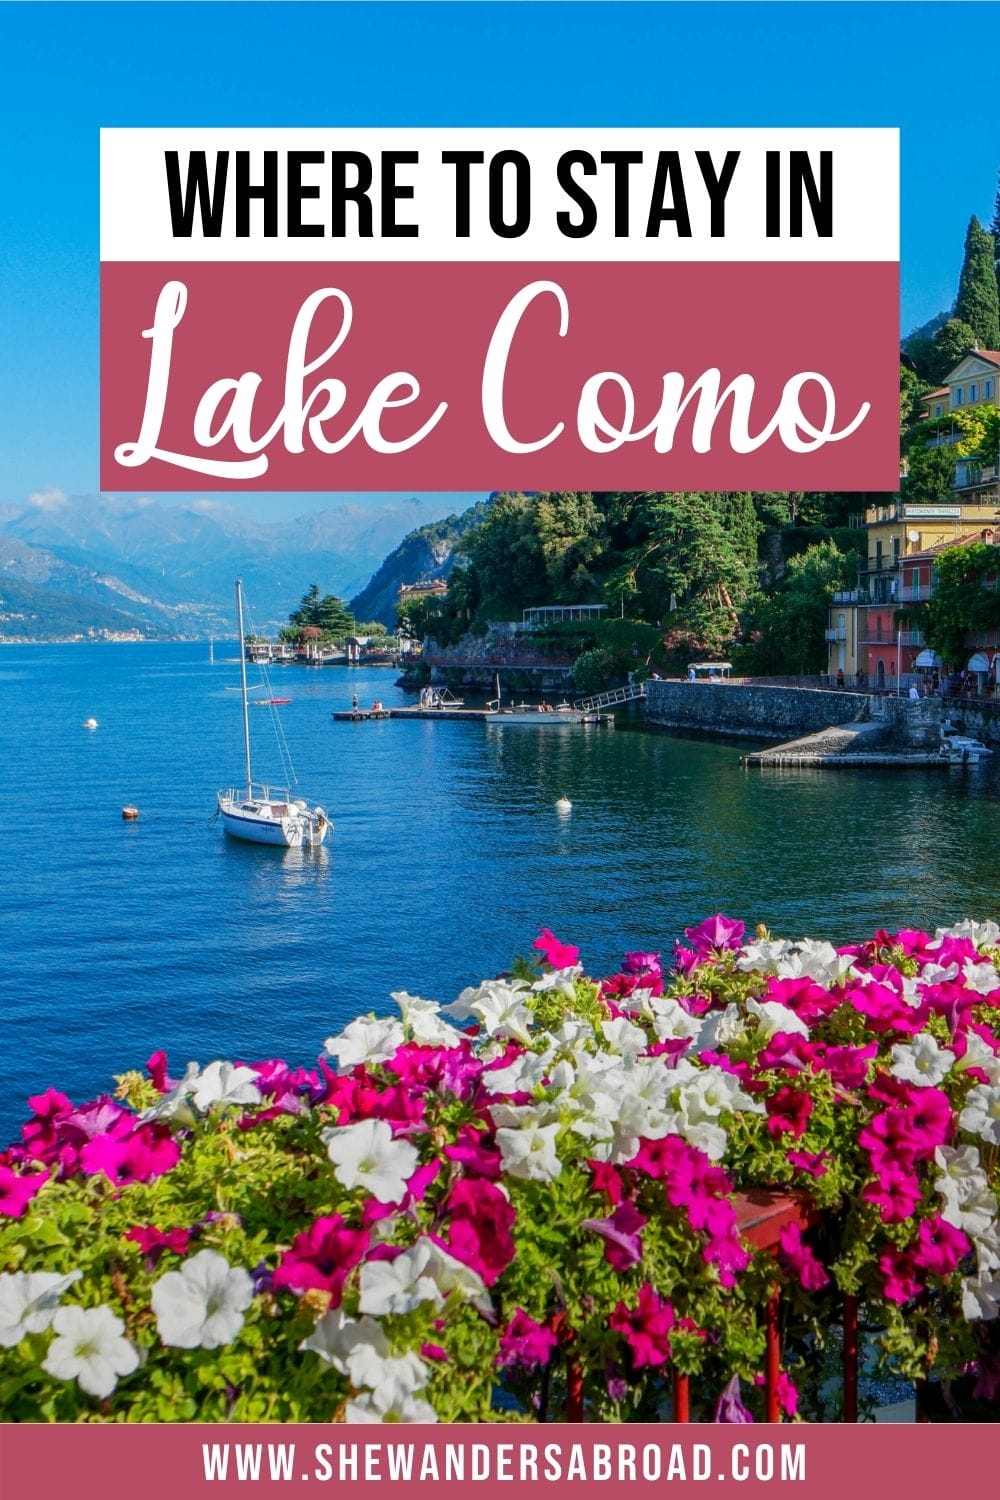  a legjobb szálláshelyek a Comói-tóban: a legjobb városok szállodák